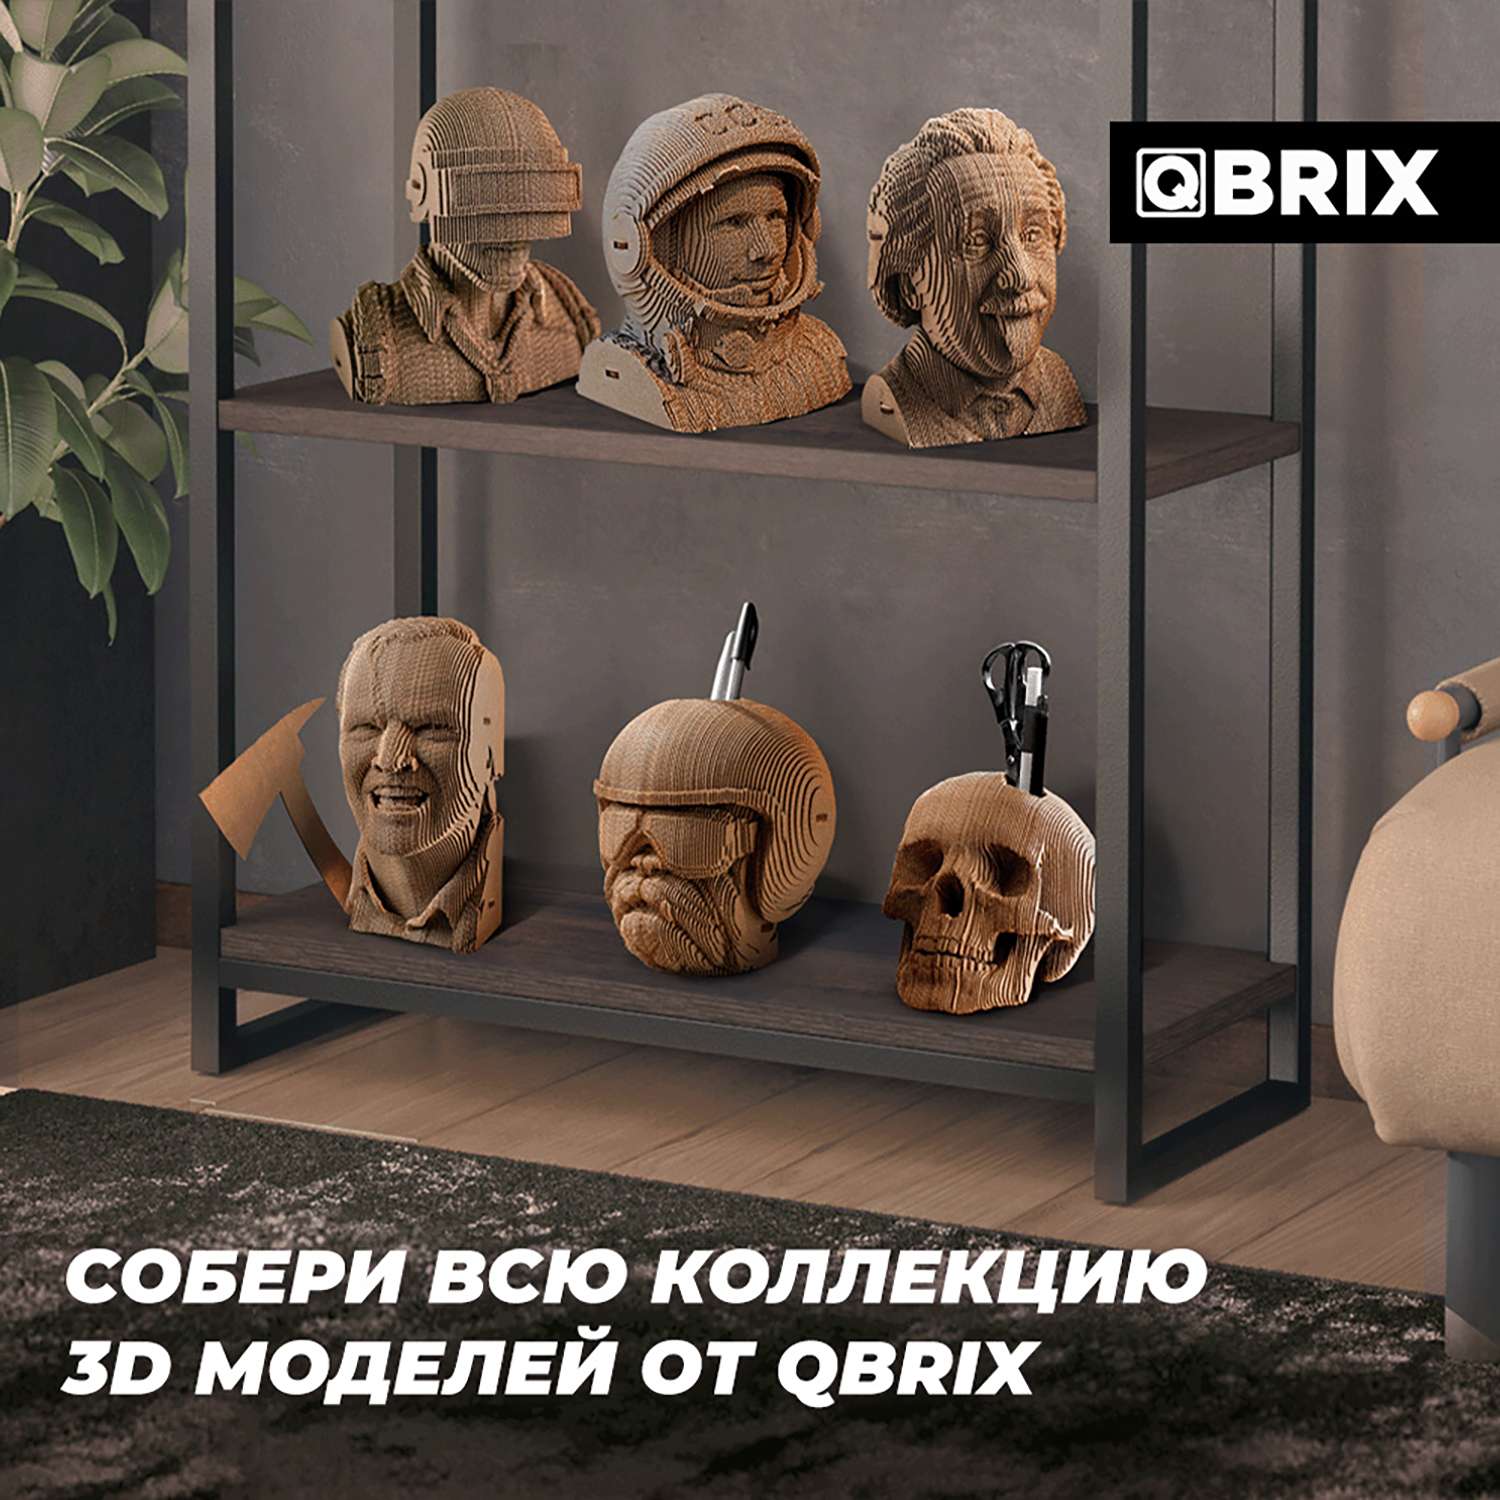 Конструктор QBRIX 3D картонный Одиссея 20020 20020 - фото 9